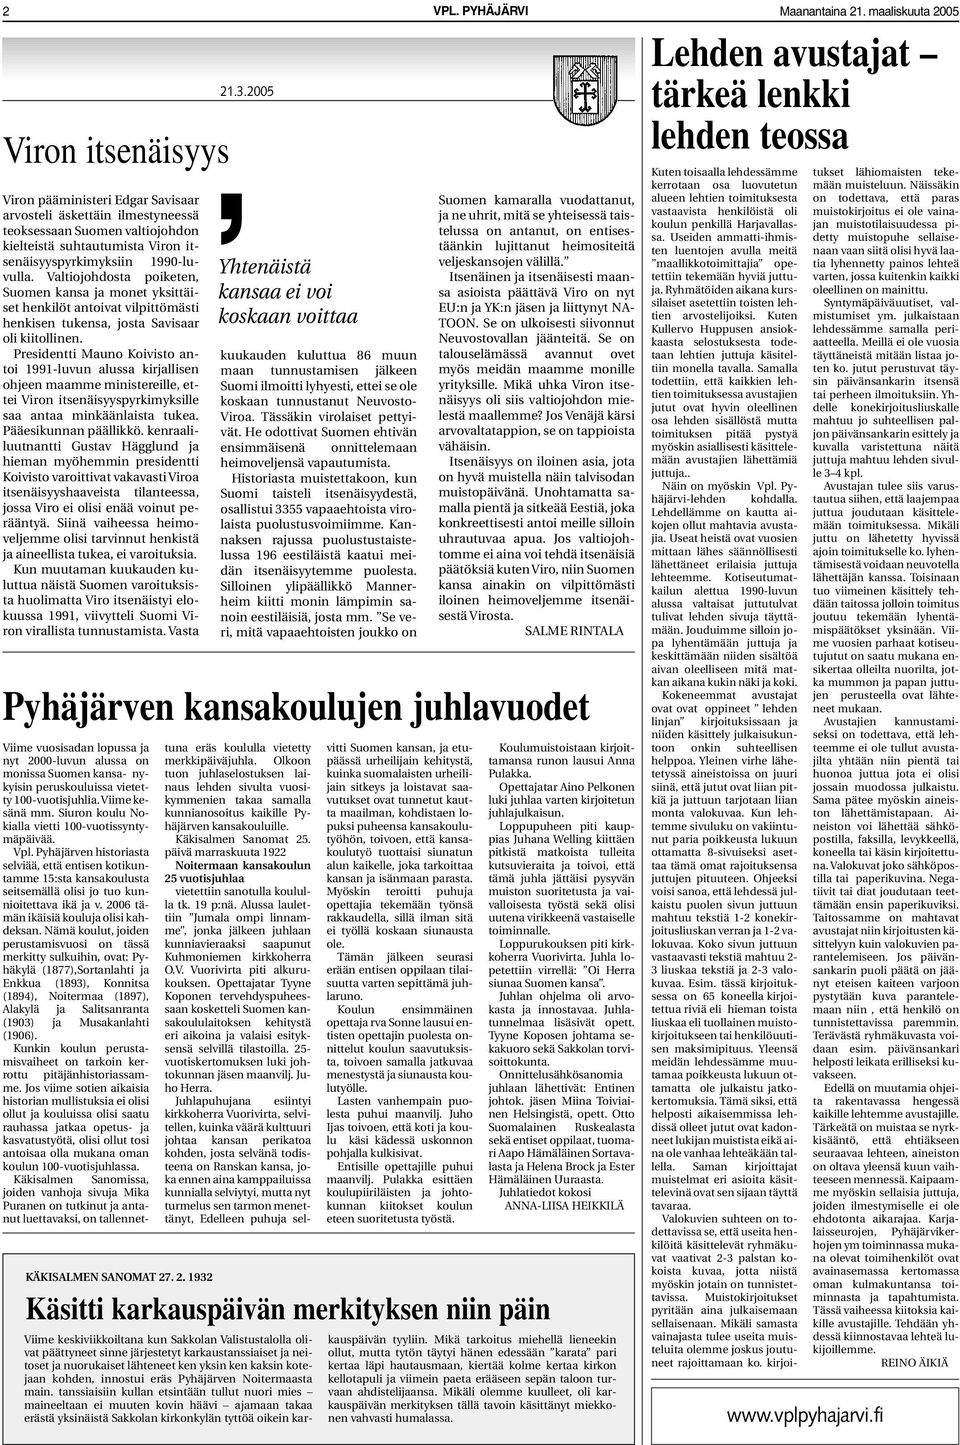 Presidentti Mauno Koivisto antoi 1991-luvun alussa kirjallisen ohjeen maamme ministereille, ettei Viron itsenäisyyspyrkimyksille saa antaa minkäänlaista tukea. Pääesikunnan päällikkö.